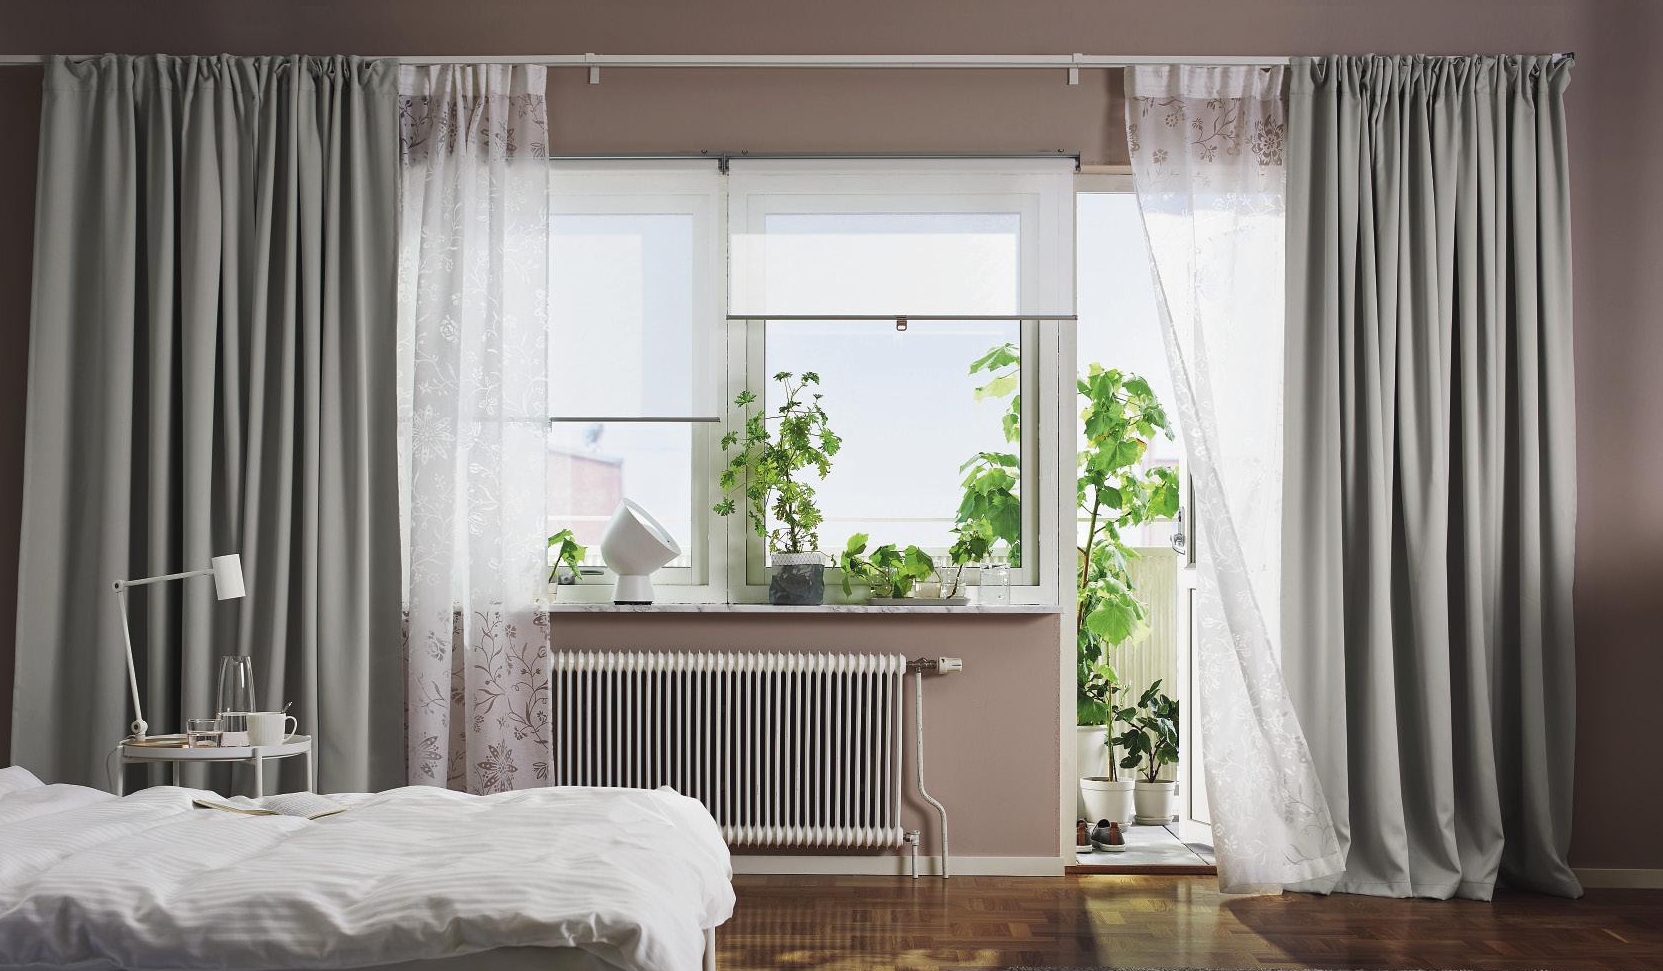 2*140cm*160cm Parigi città schermi voile tende finestra tende/drappeggi/pannelli/trattamento per camera da letto soggiorno 